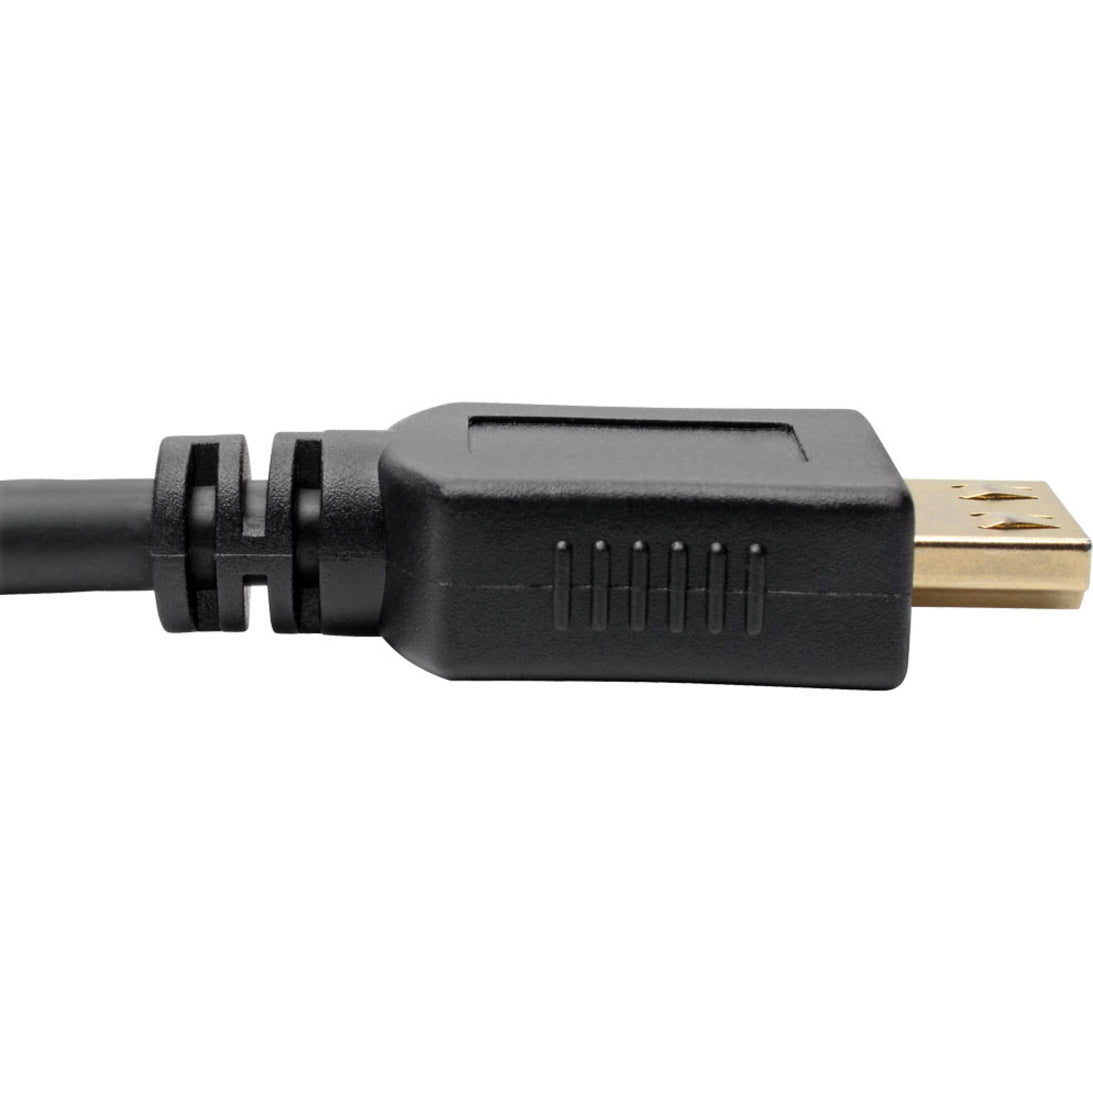 Tripp Lite P568-050-BK-GRP High-Speed HDMI Cable 50 ft. with Gripping Connectors Black  Tripp Lite P568-050-BK-GRP Câble HDMI haute vitesse 50 pi avec Connecteurs de Préhension Noir